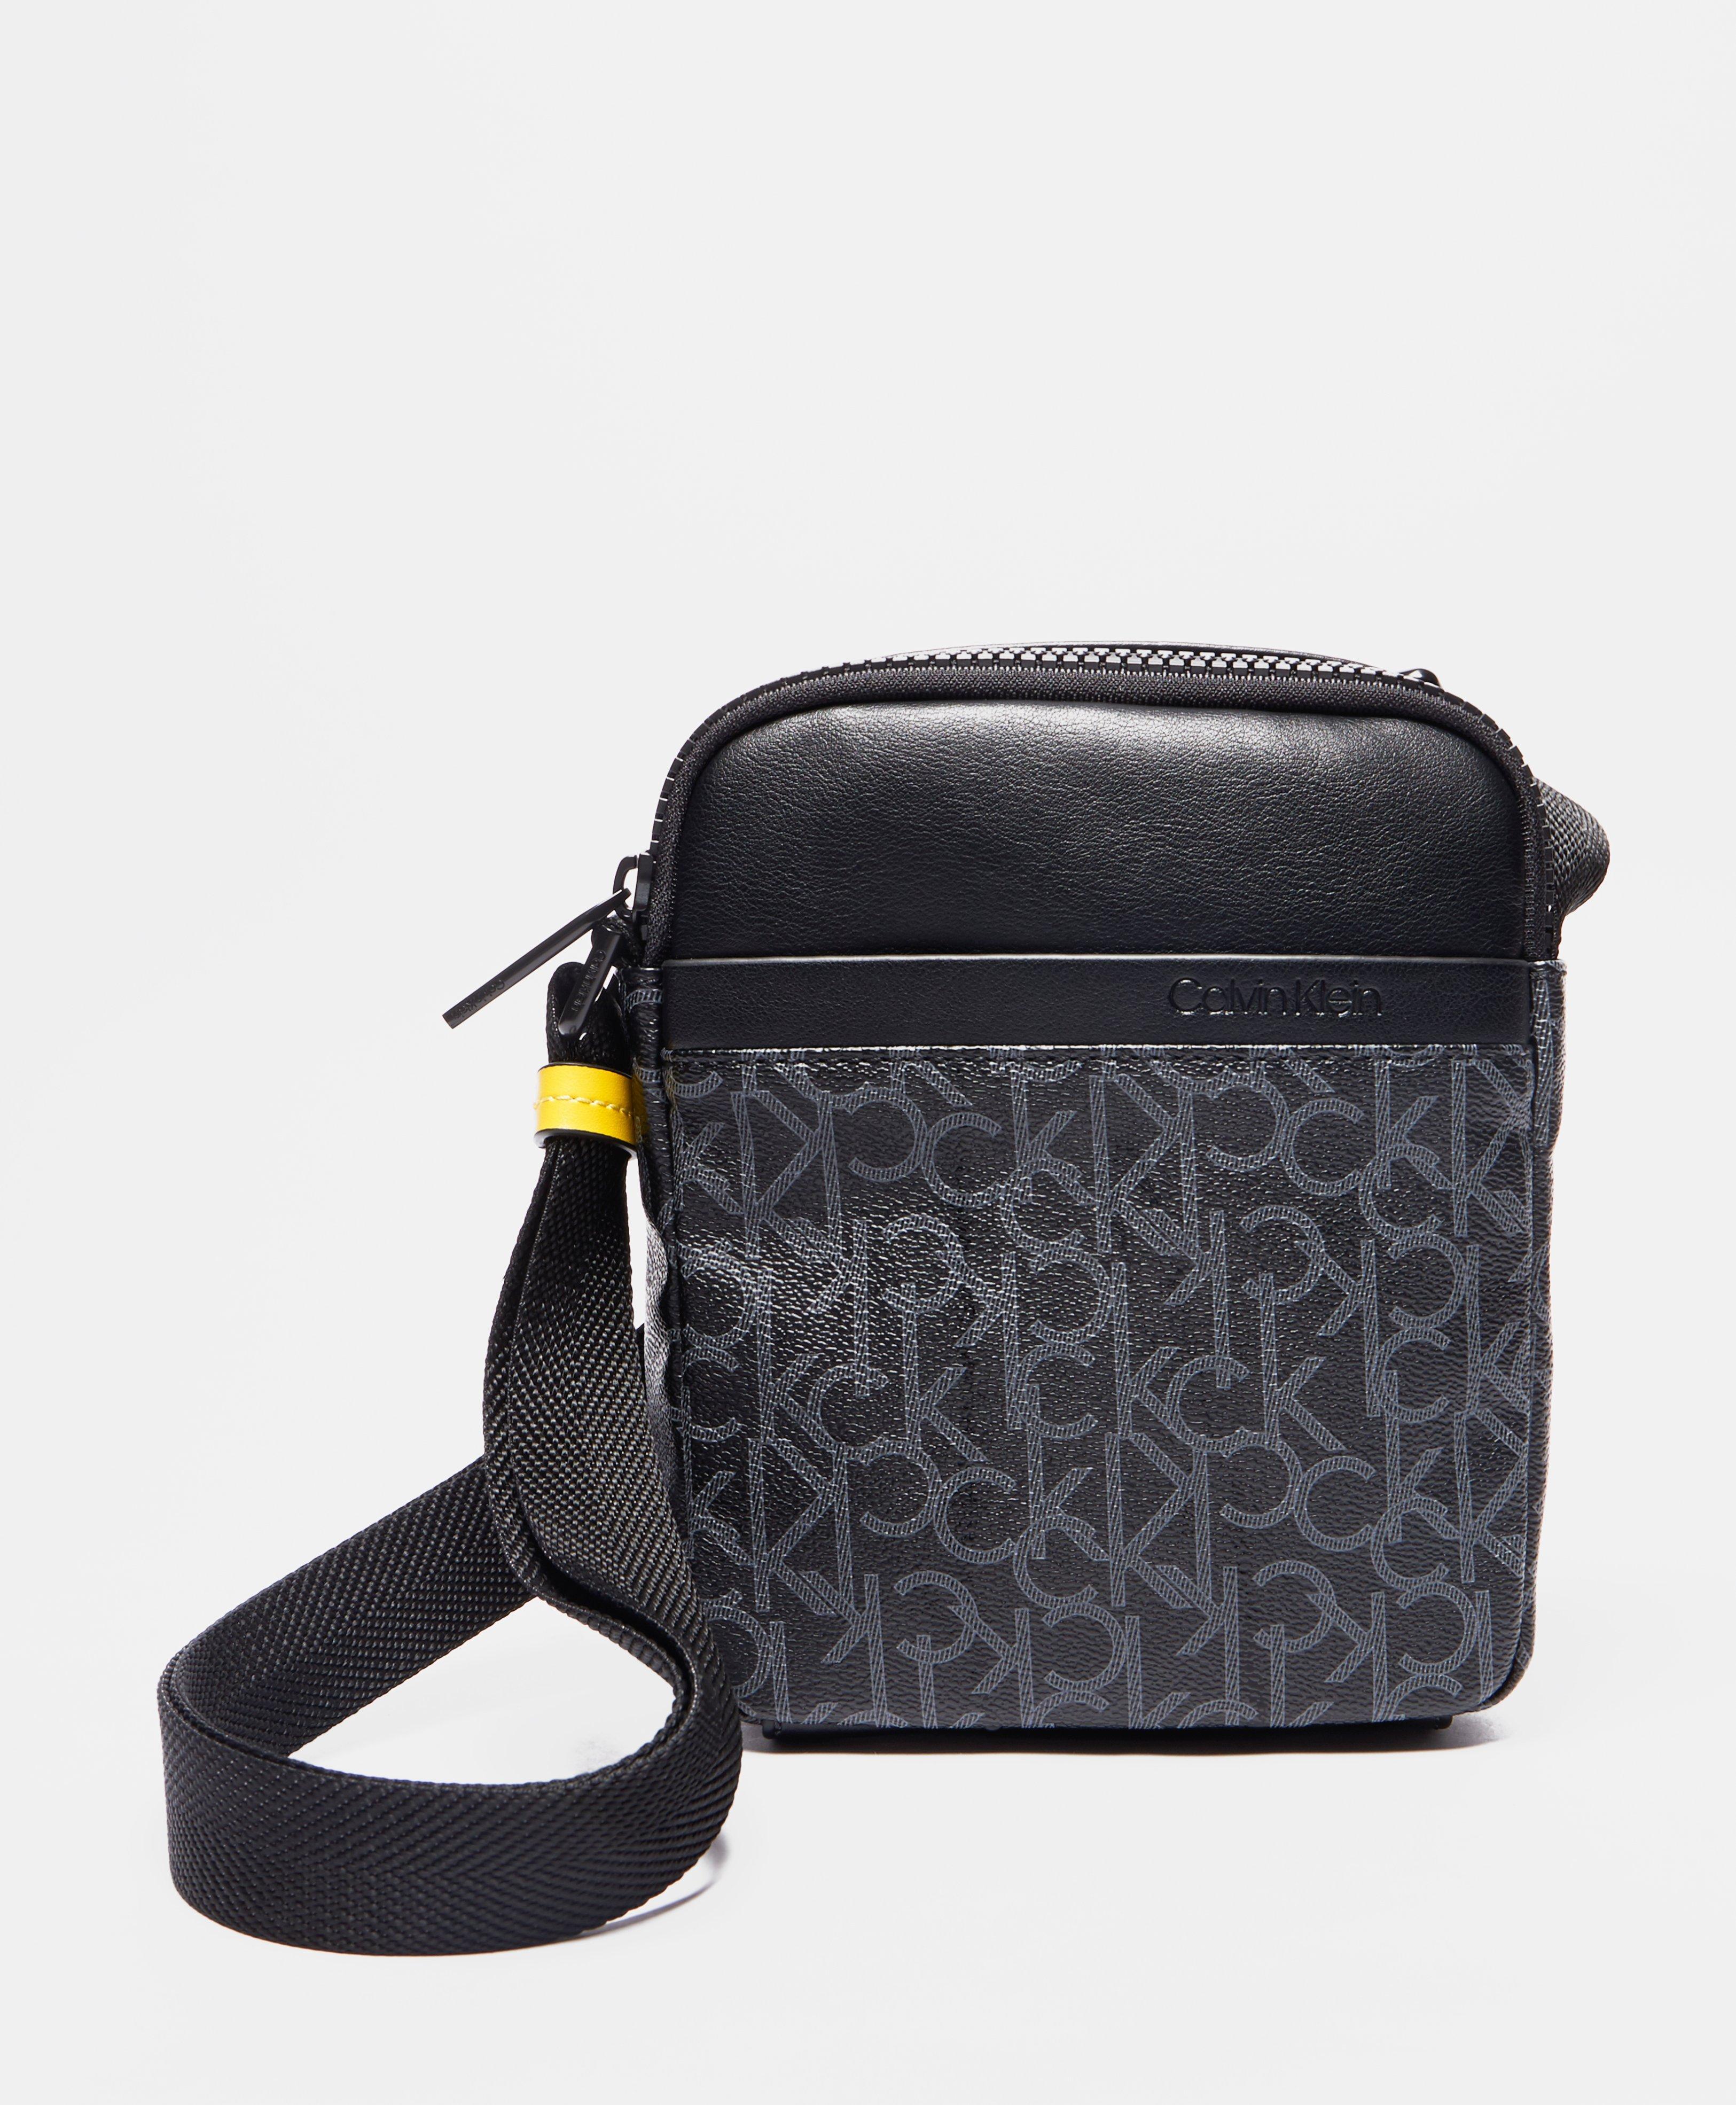 Calvin Klein Monogram Small Item Bag for Men - Lyst